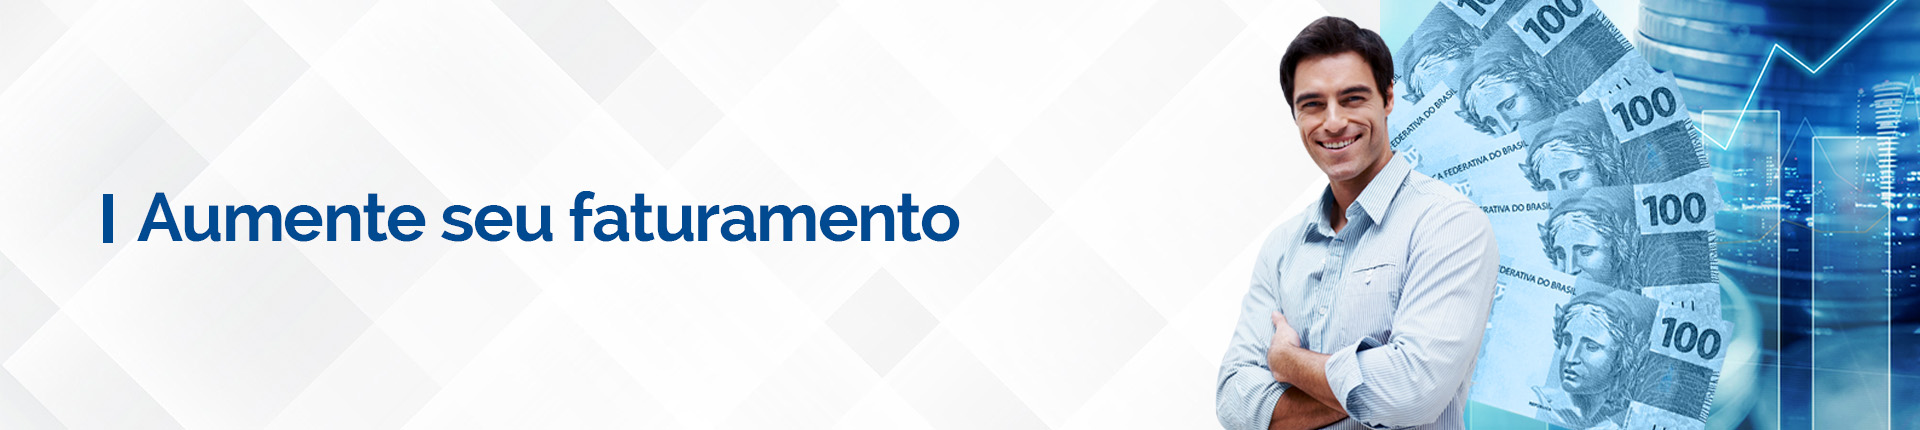 Banner_aumente_se_faturamento